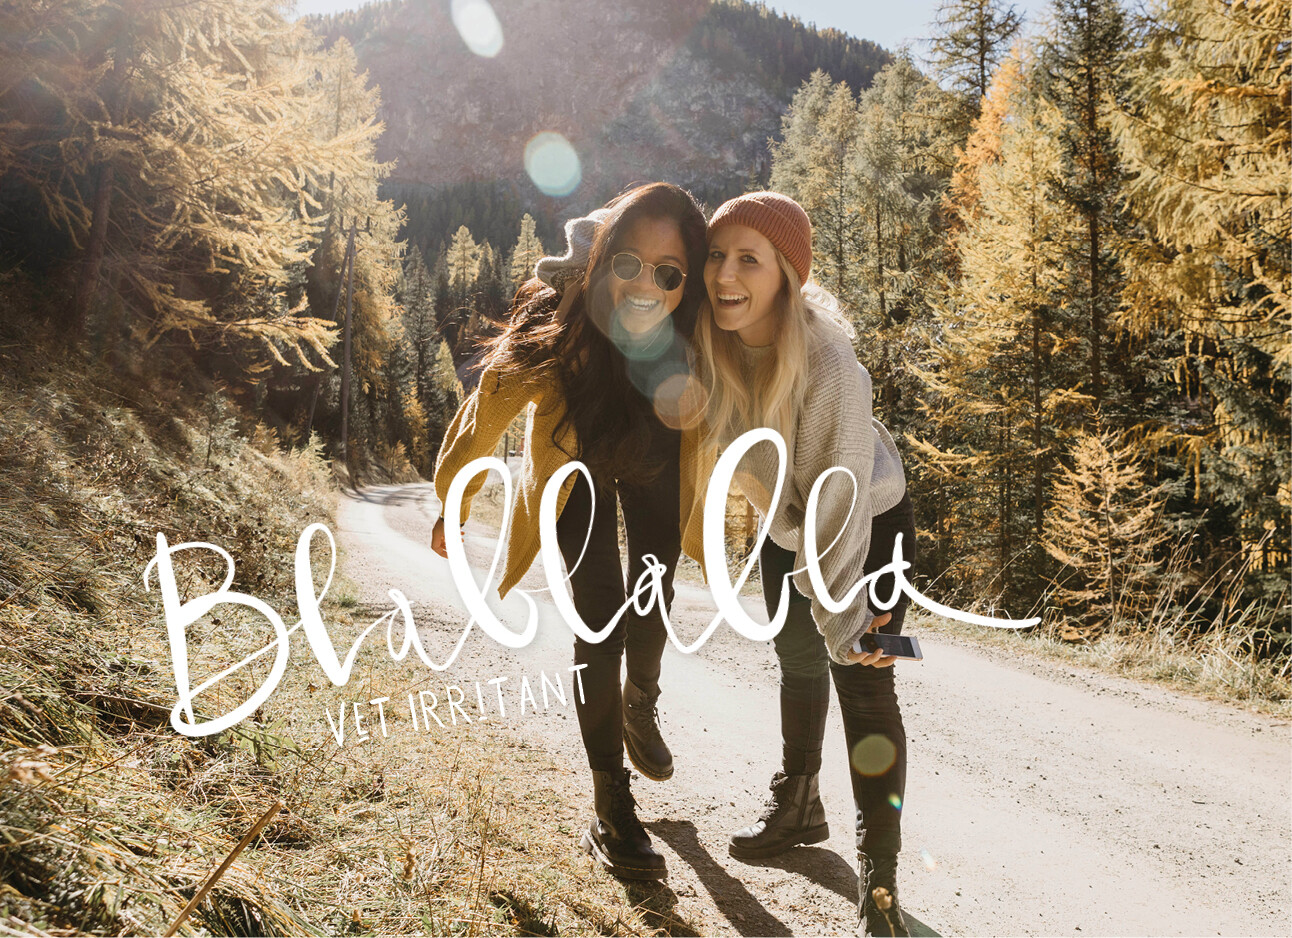 2 vrouwen backpacken door de bergen en lachen met elkaar